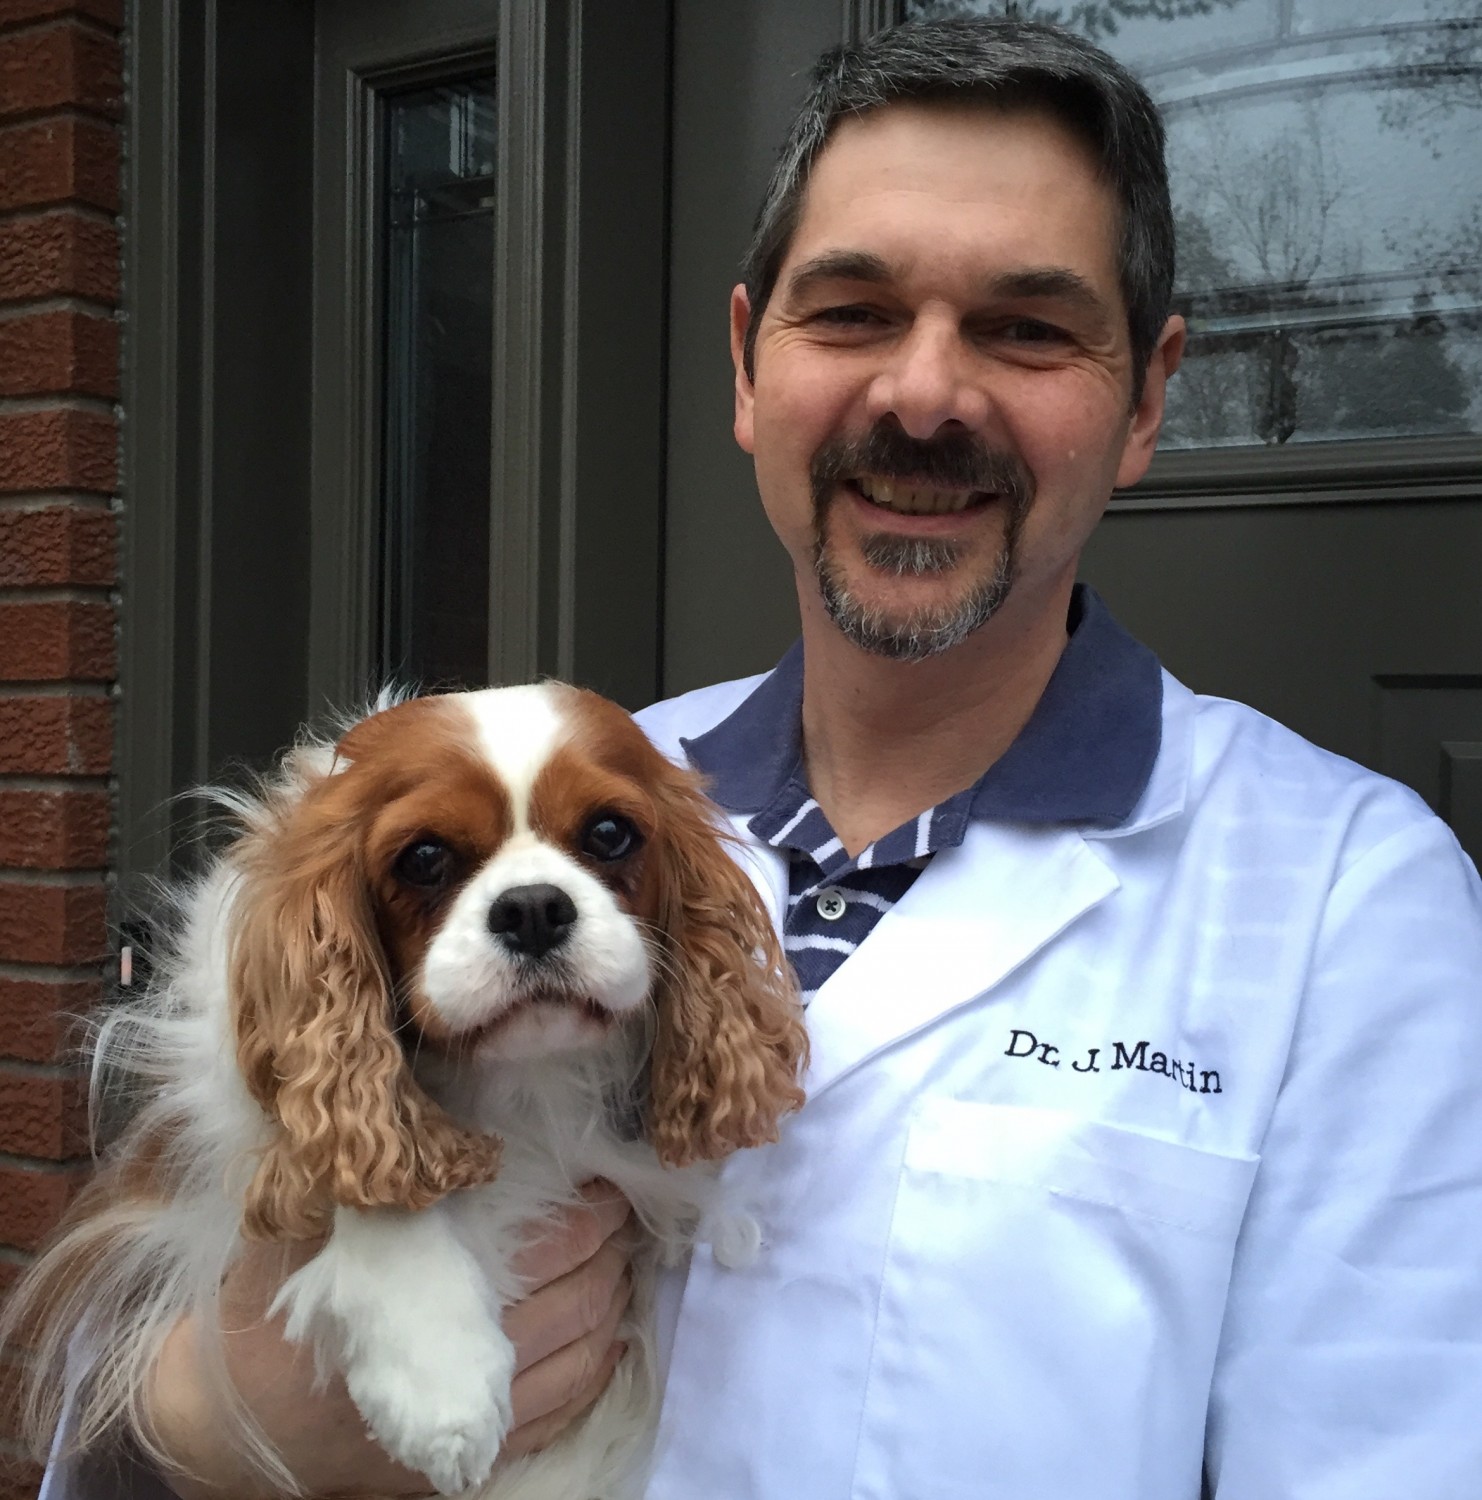 Dr. Martin holding dog